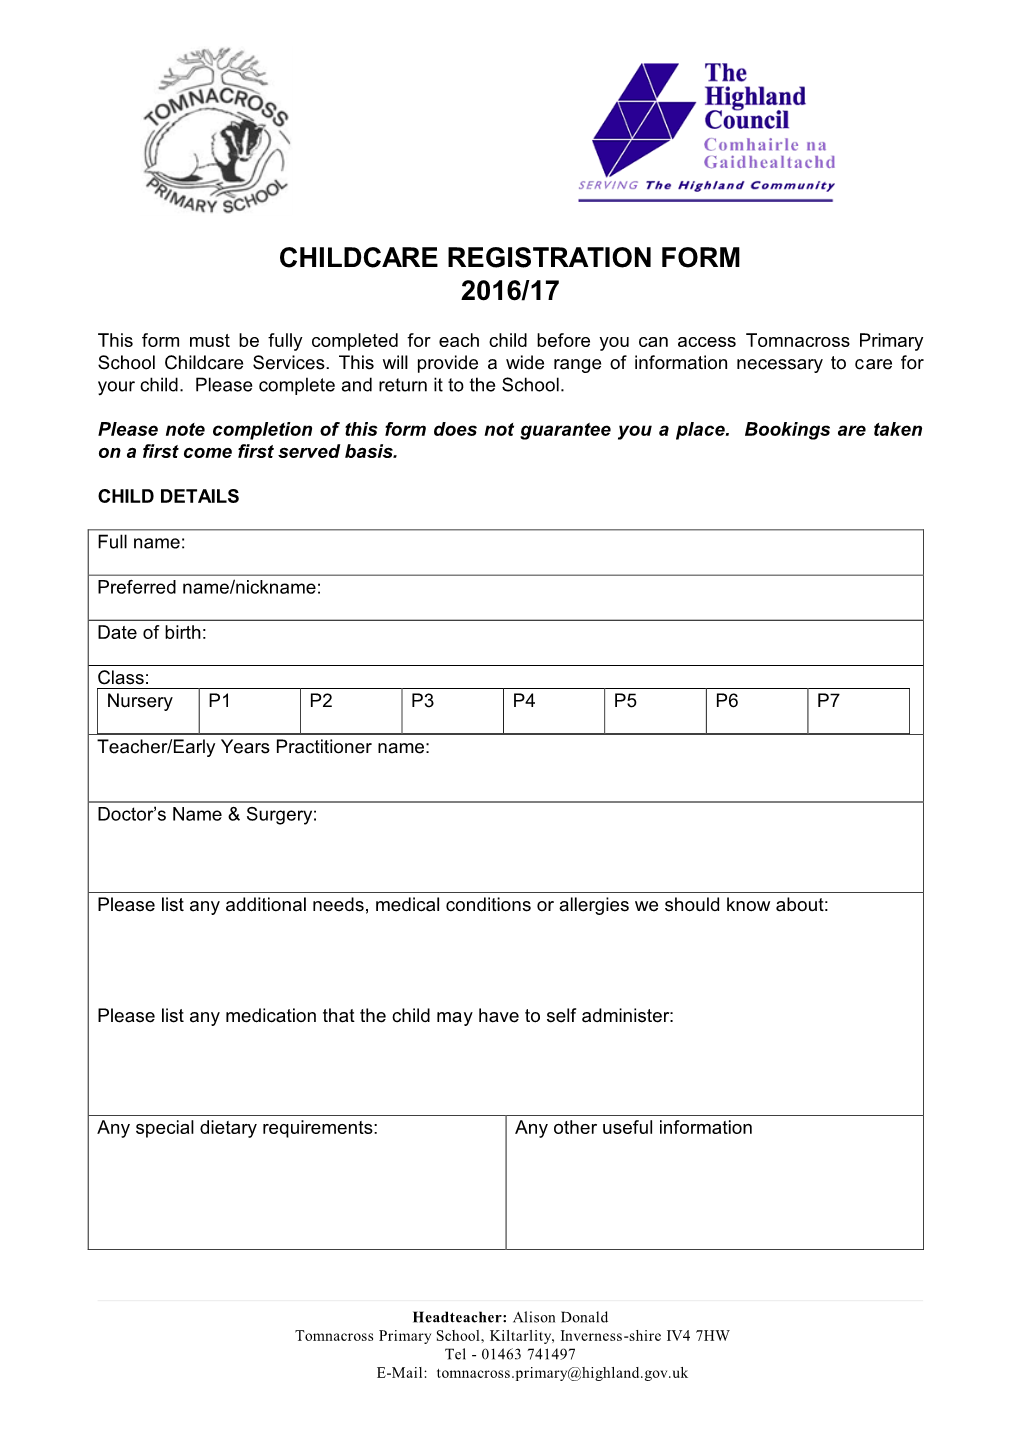 Registration Form 2016/17